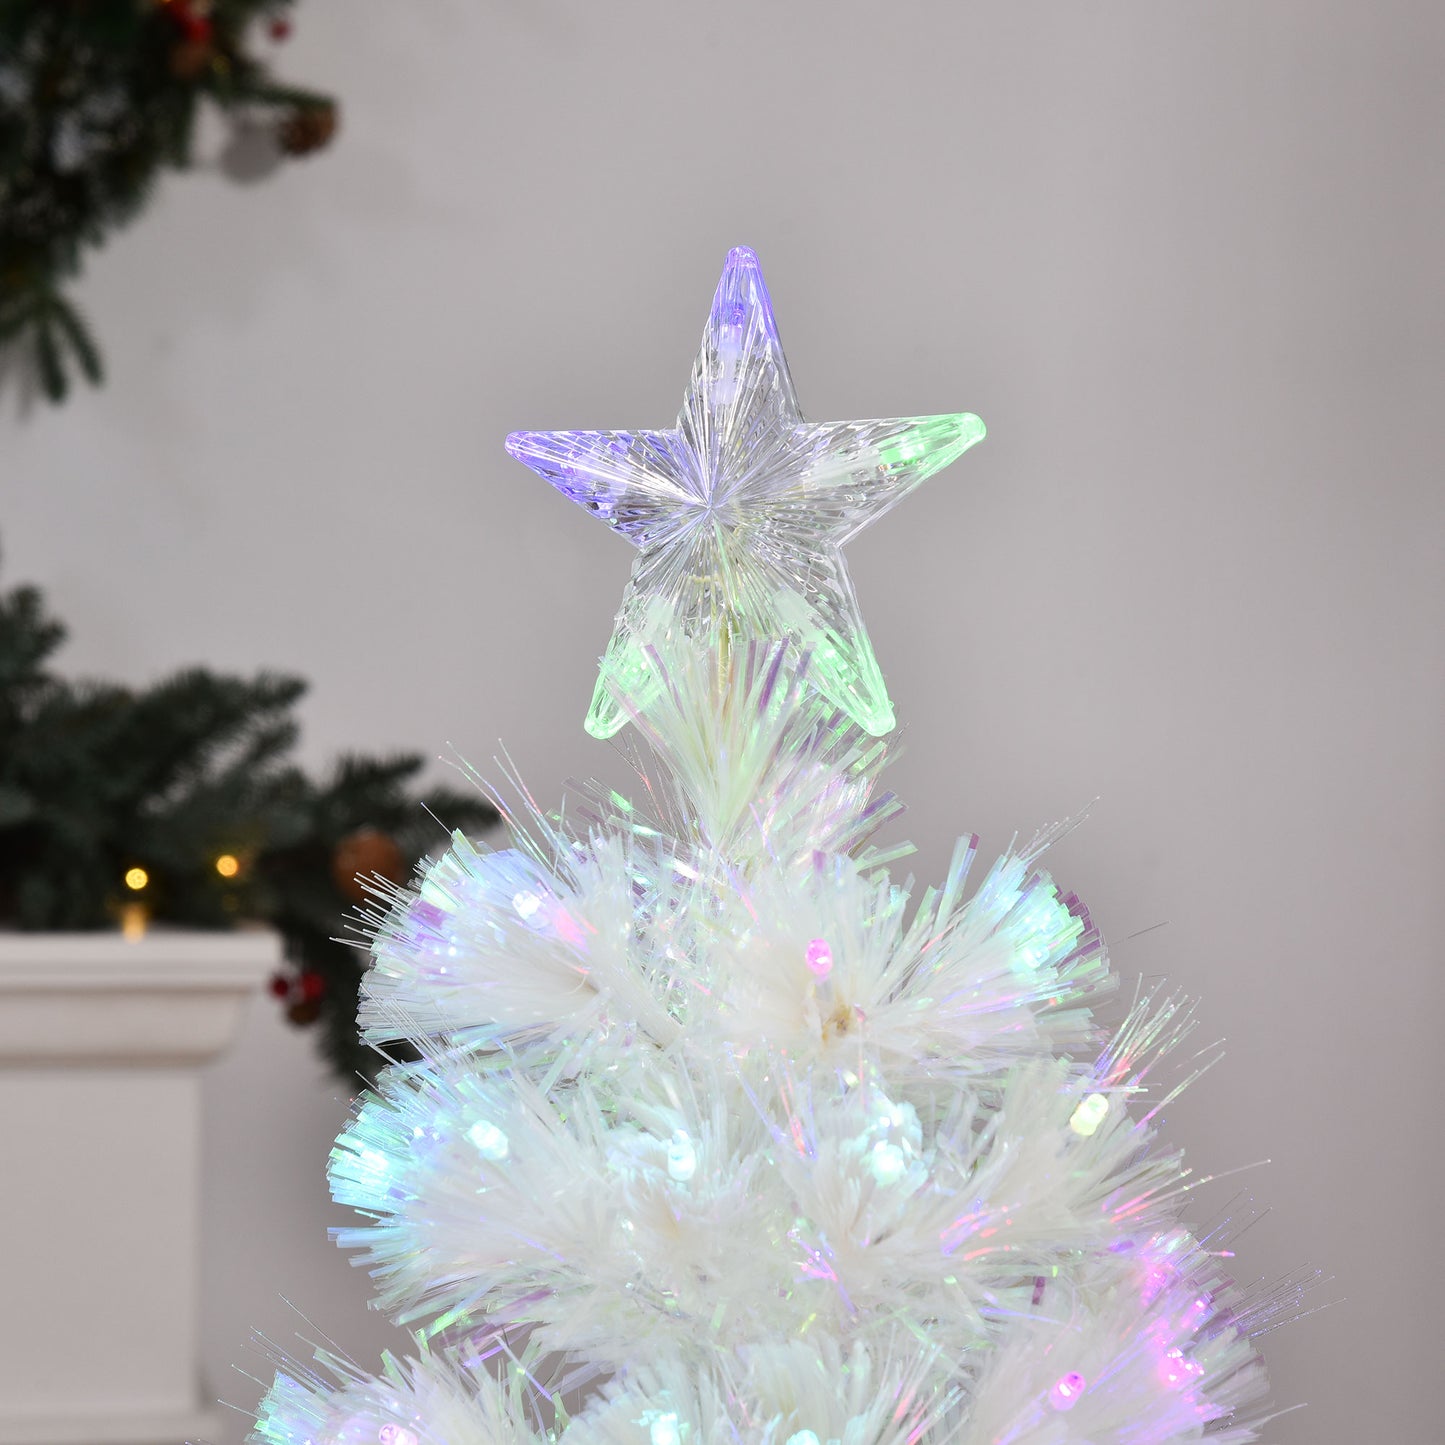 HOMCOM 4FT Prelit Artificial Christmas Tree w/ Fiber Optic, Xmas Decoration, White